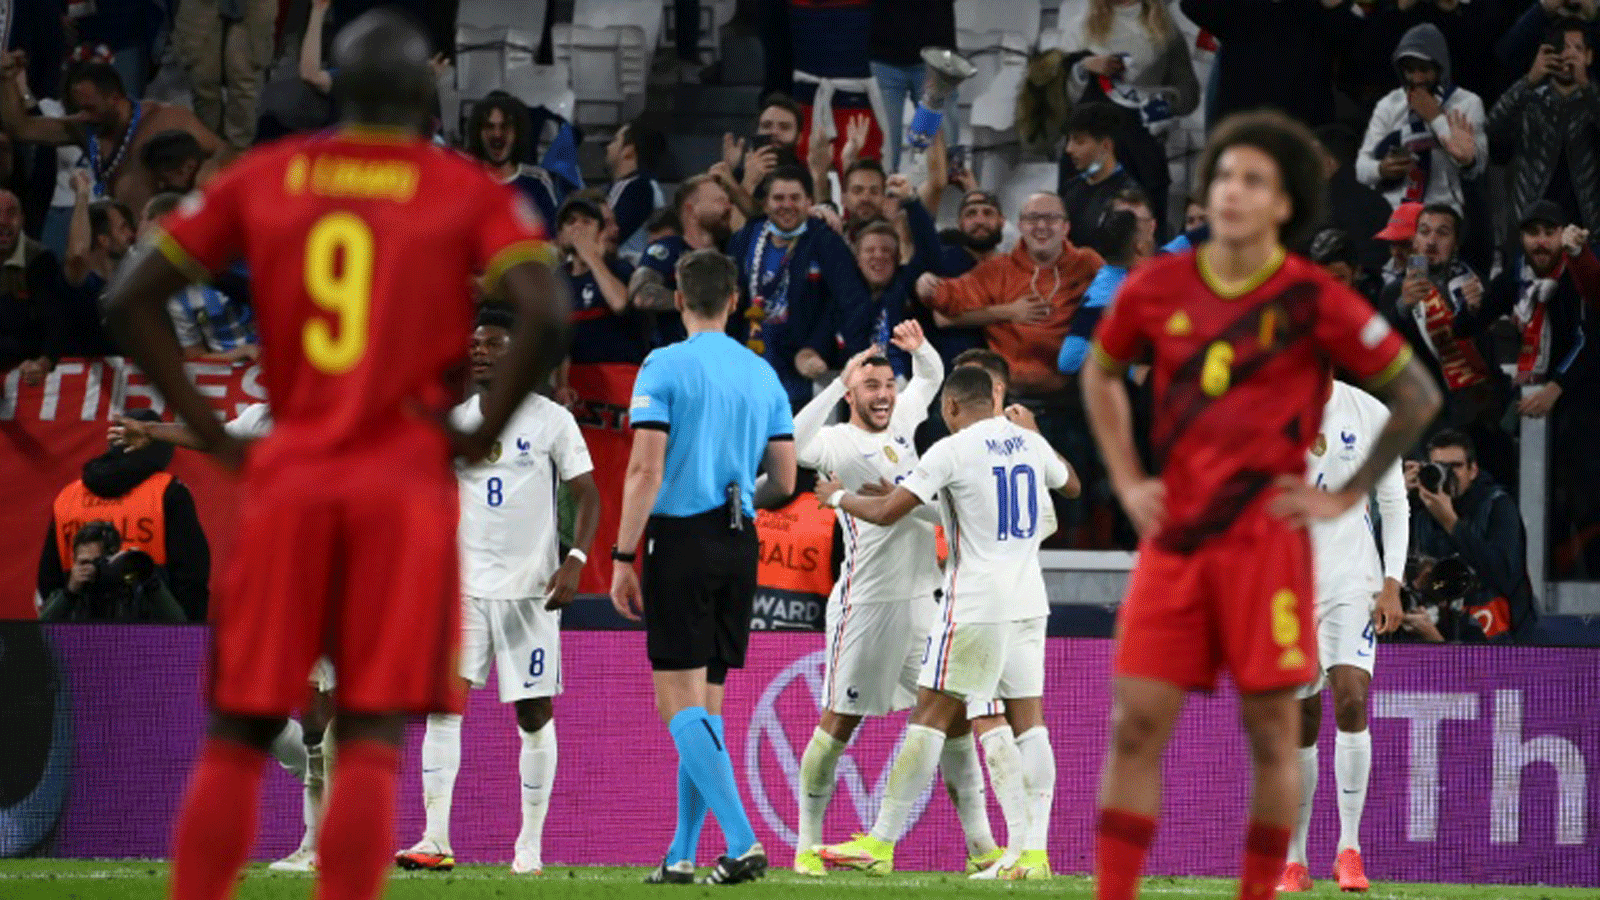 مدافع المنتخب الفرنسي ثيو هرنانديز يحتفل بتسجيله هدف الفوز في مرمى بلجيكا (3-2) في نصف نهائي دوري الامم الاوروبية في تورينو في 7 تشرين الأول/أكتوبر 2021.